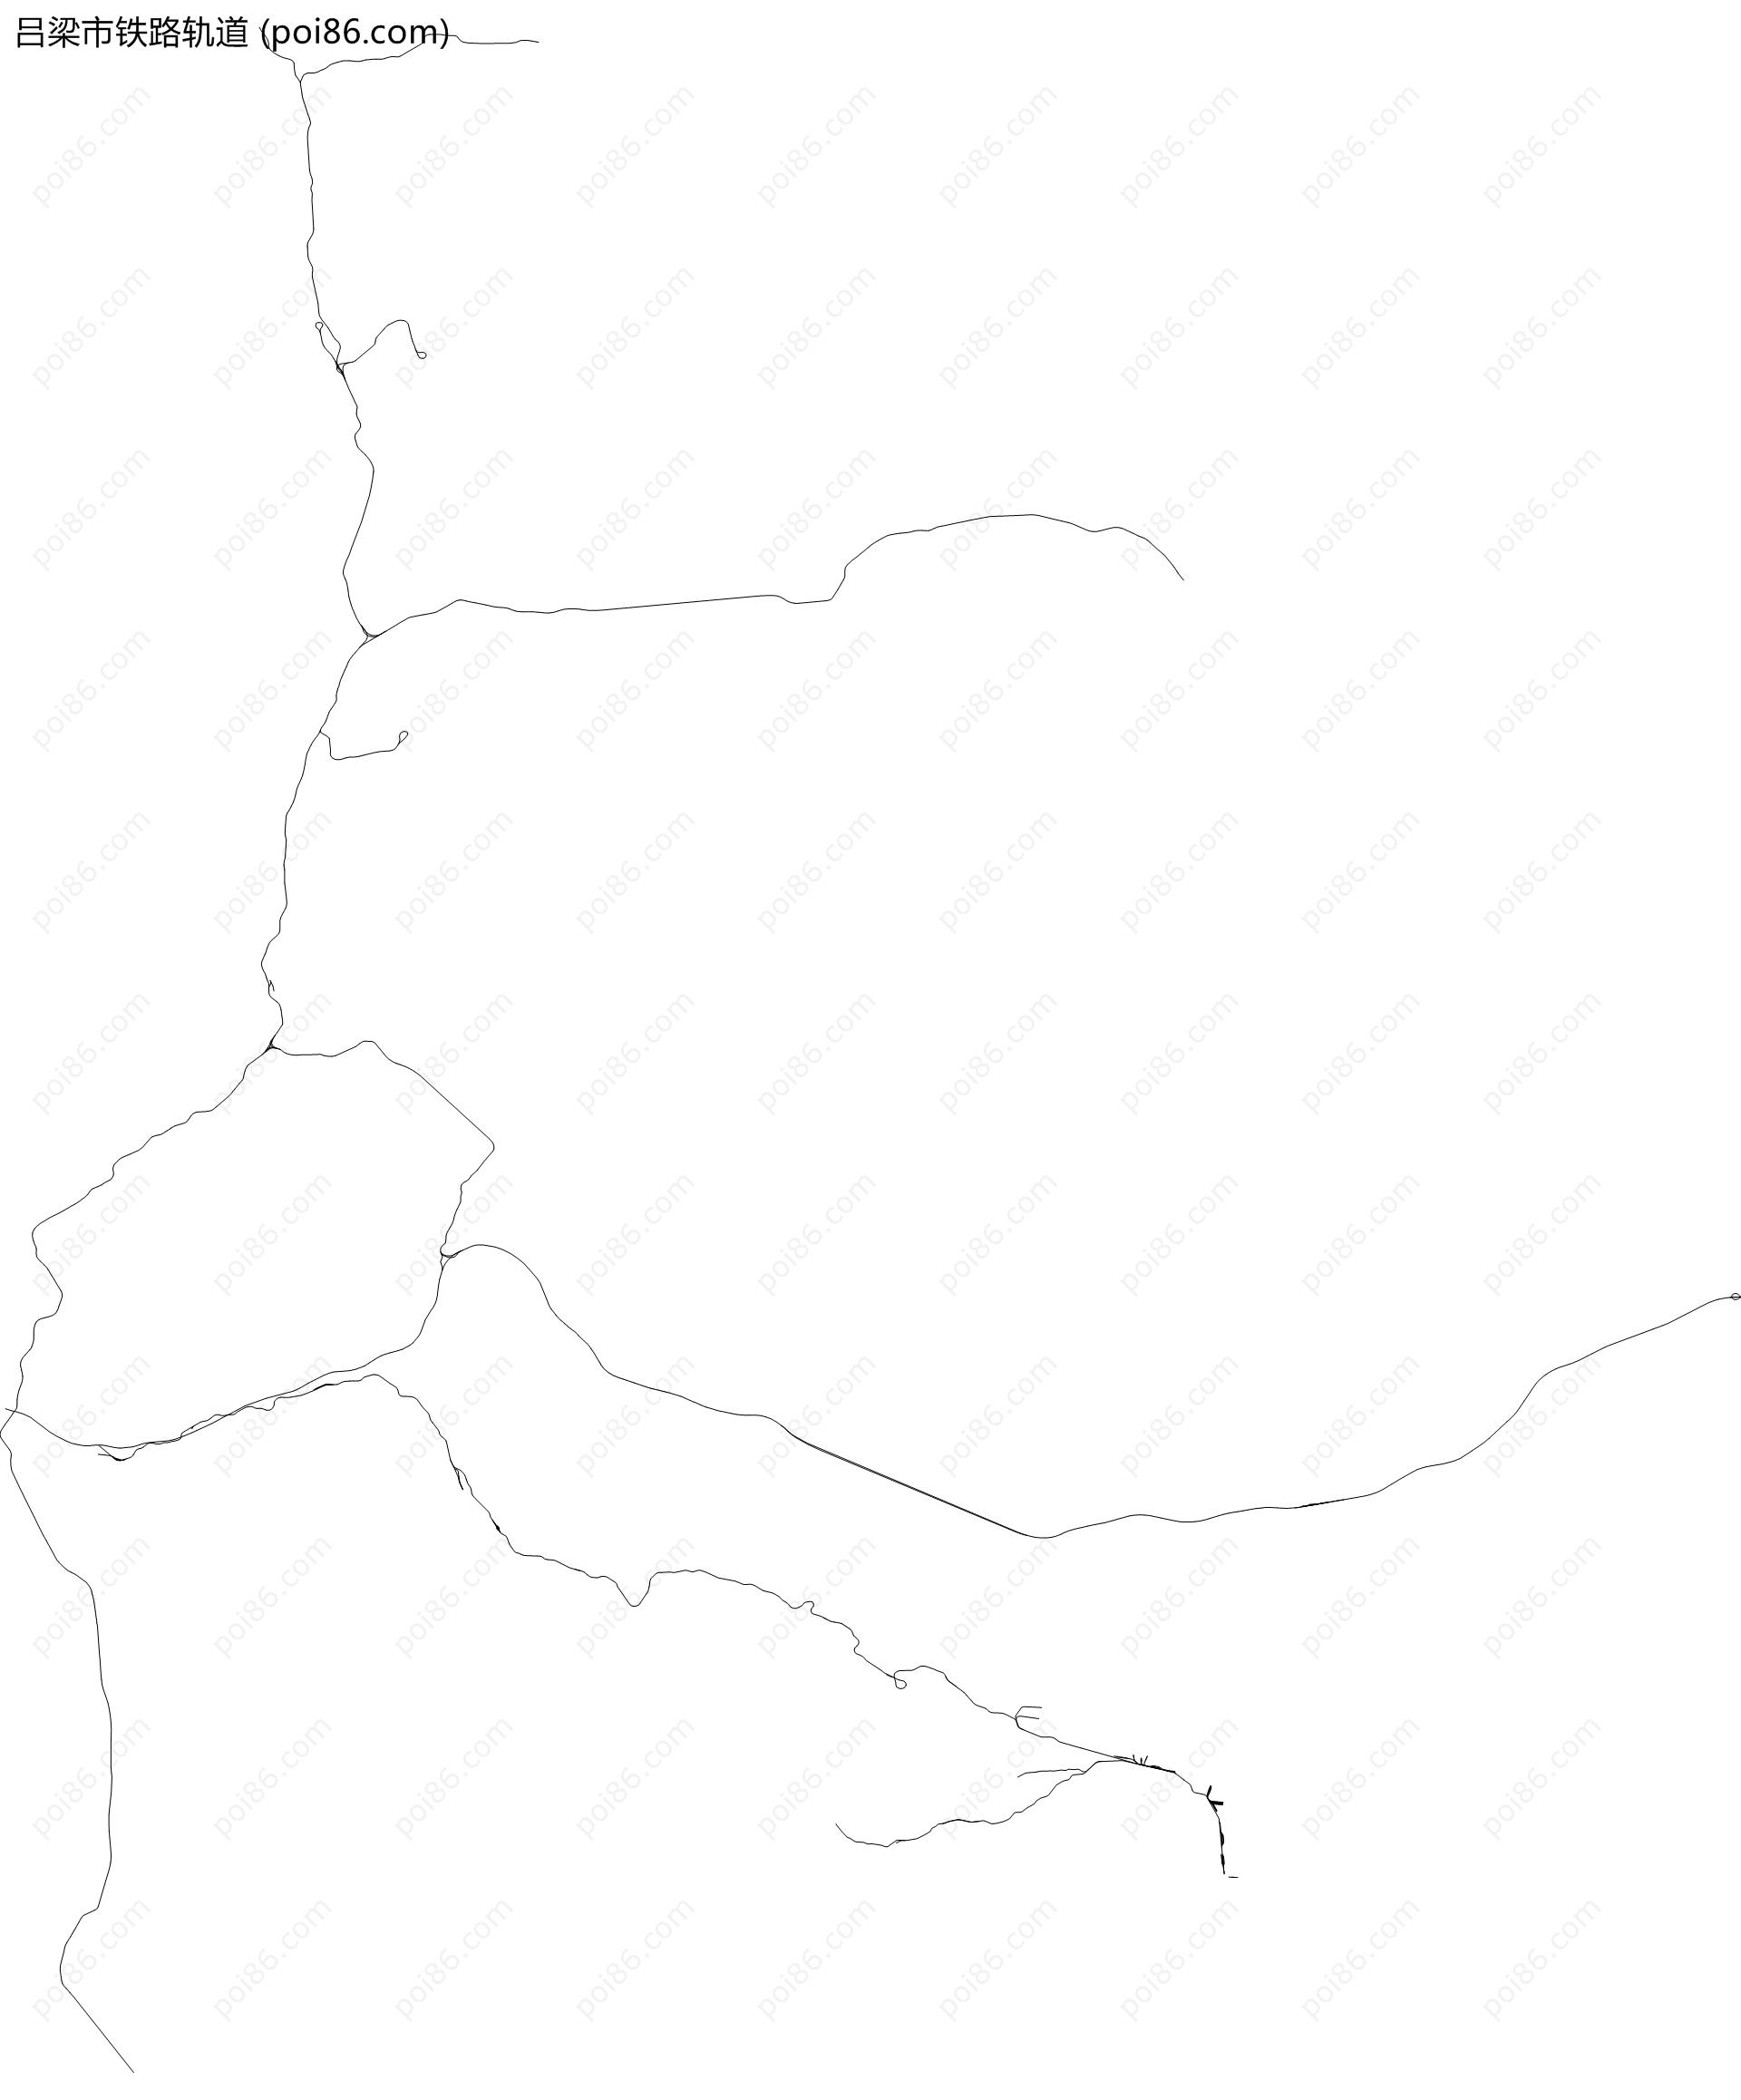 吕梁市铁路轨道地图